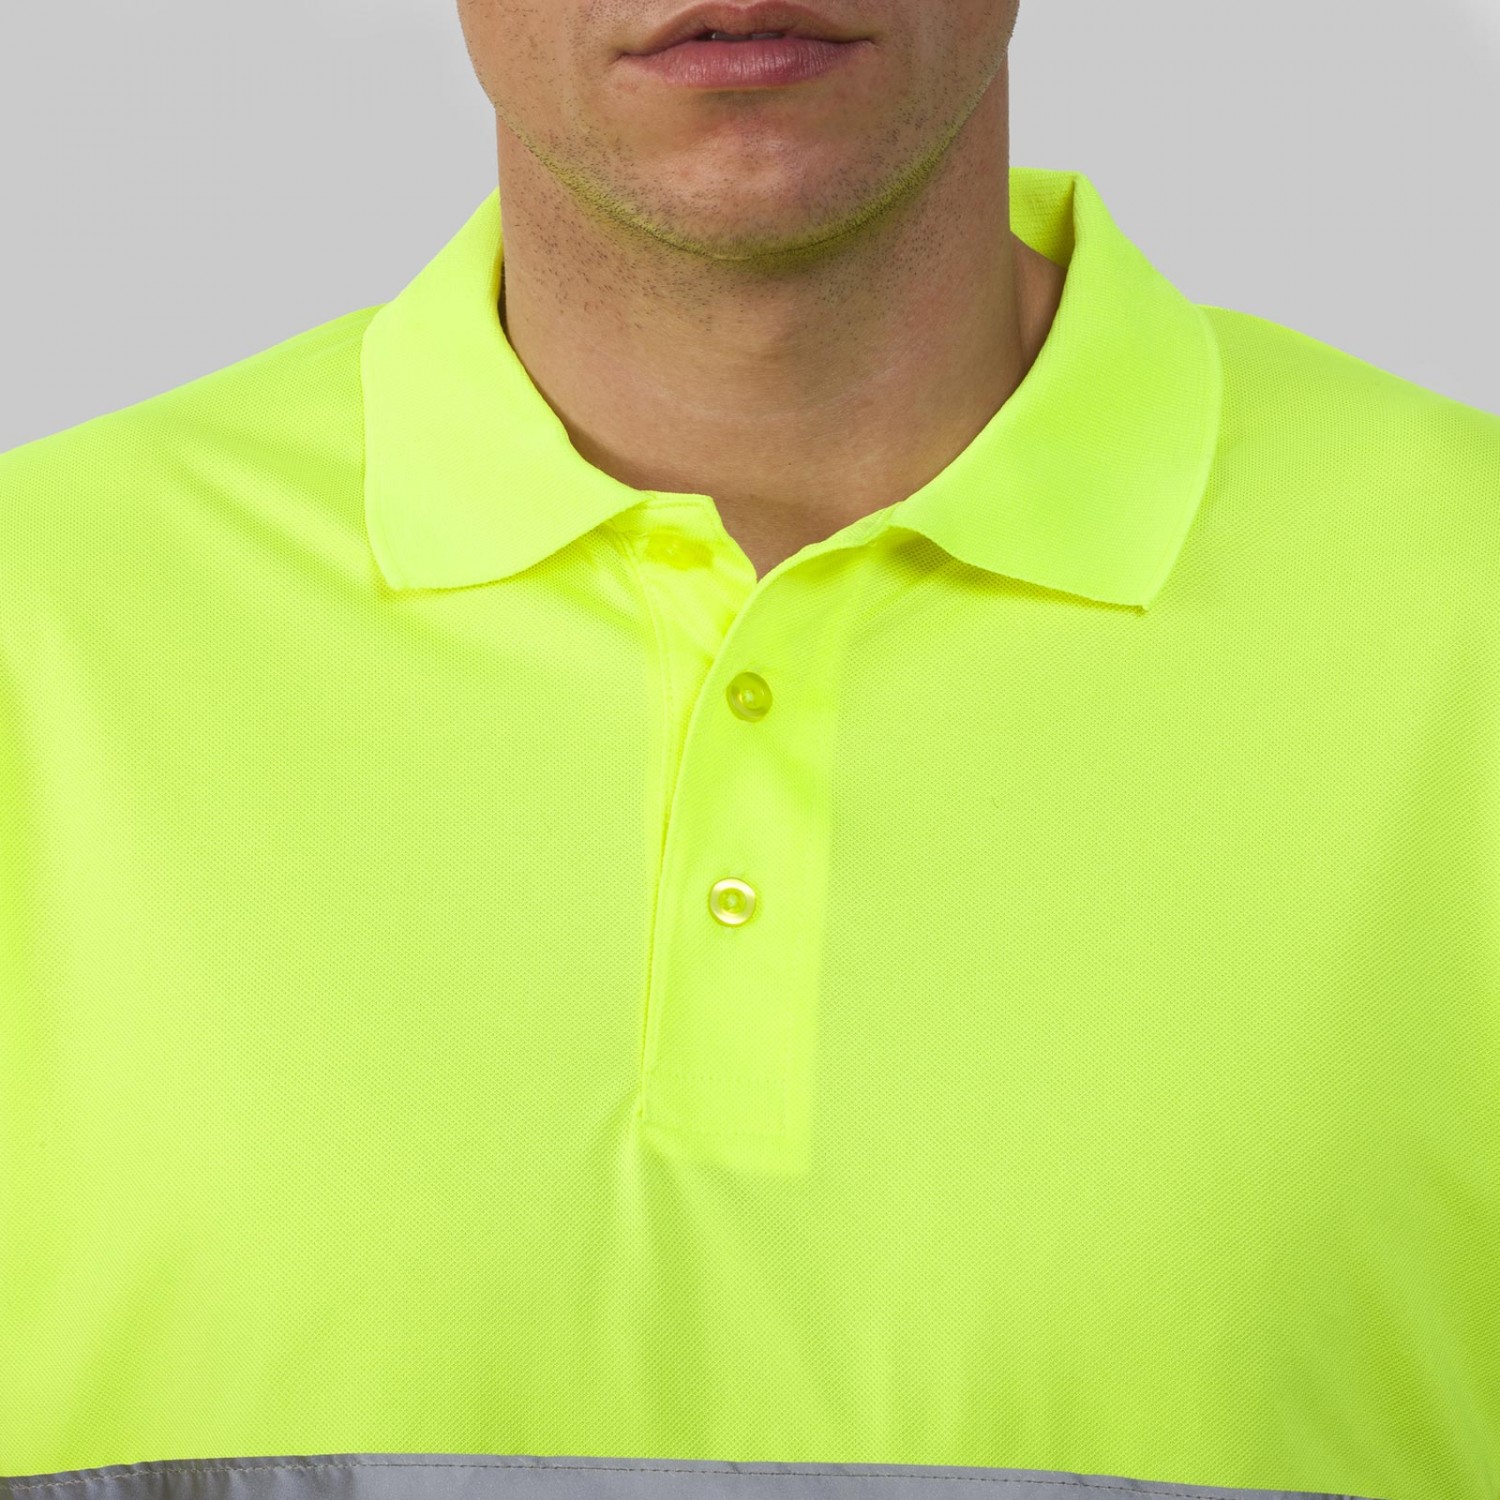 3. Foto Polo Shirt HI VIZ POLARIS leuchtend gelb Reflektorstreifen (Größe: M)